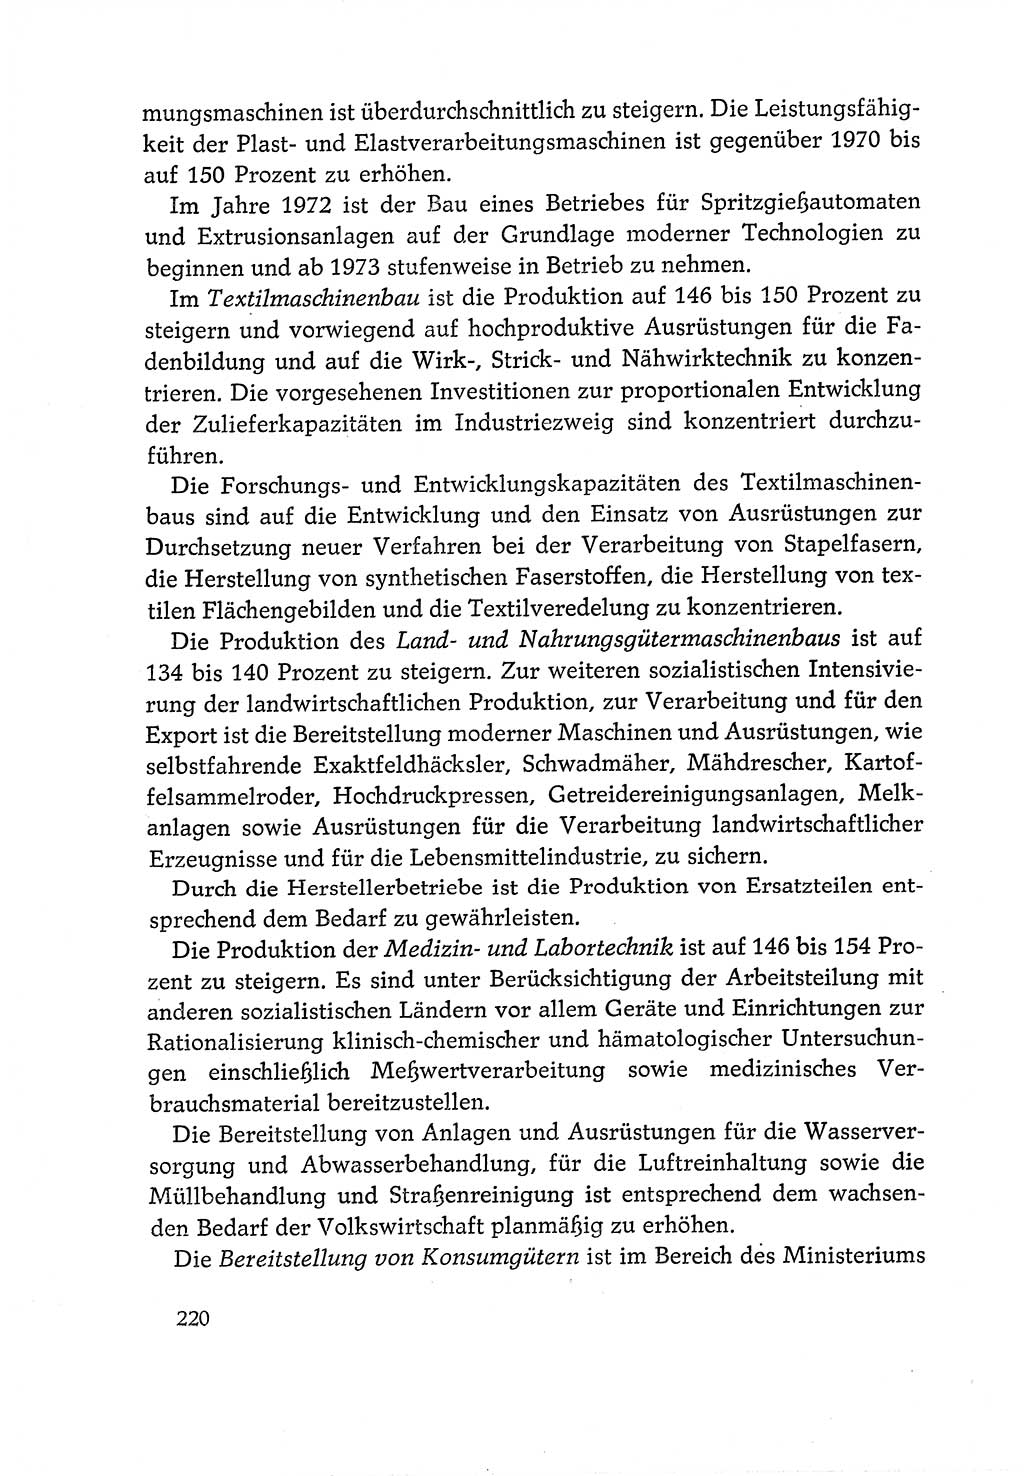 Dokumente der Sozialistischen Einheitspartei Deutschlands (SED) [Deutsche Demokratische Republik (DDR)] 1970-1971, Seite 220 (Dok. SED DDR 1970-1971, S. 220)